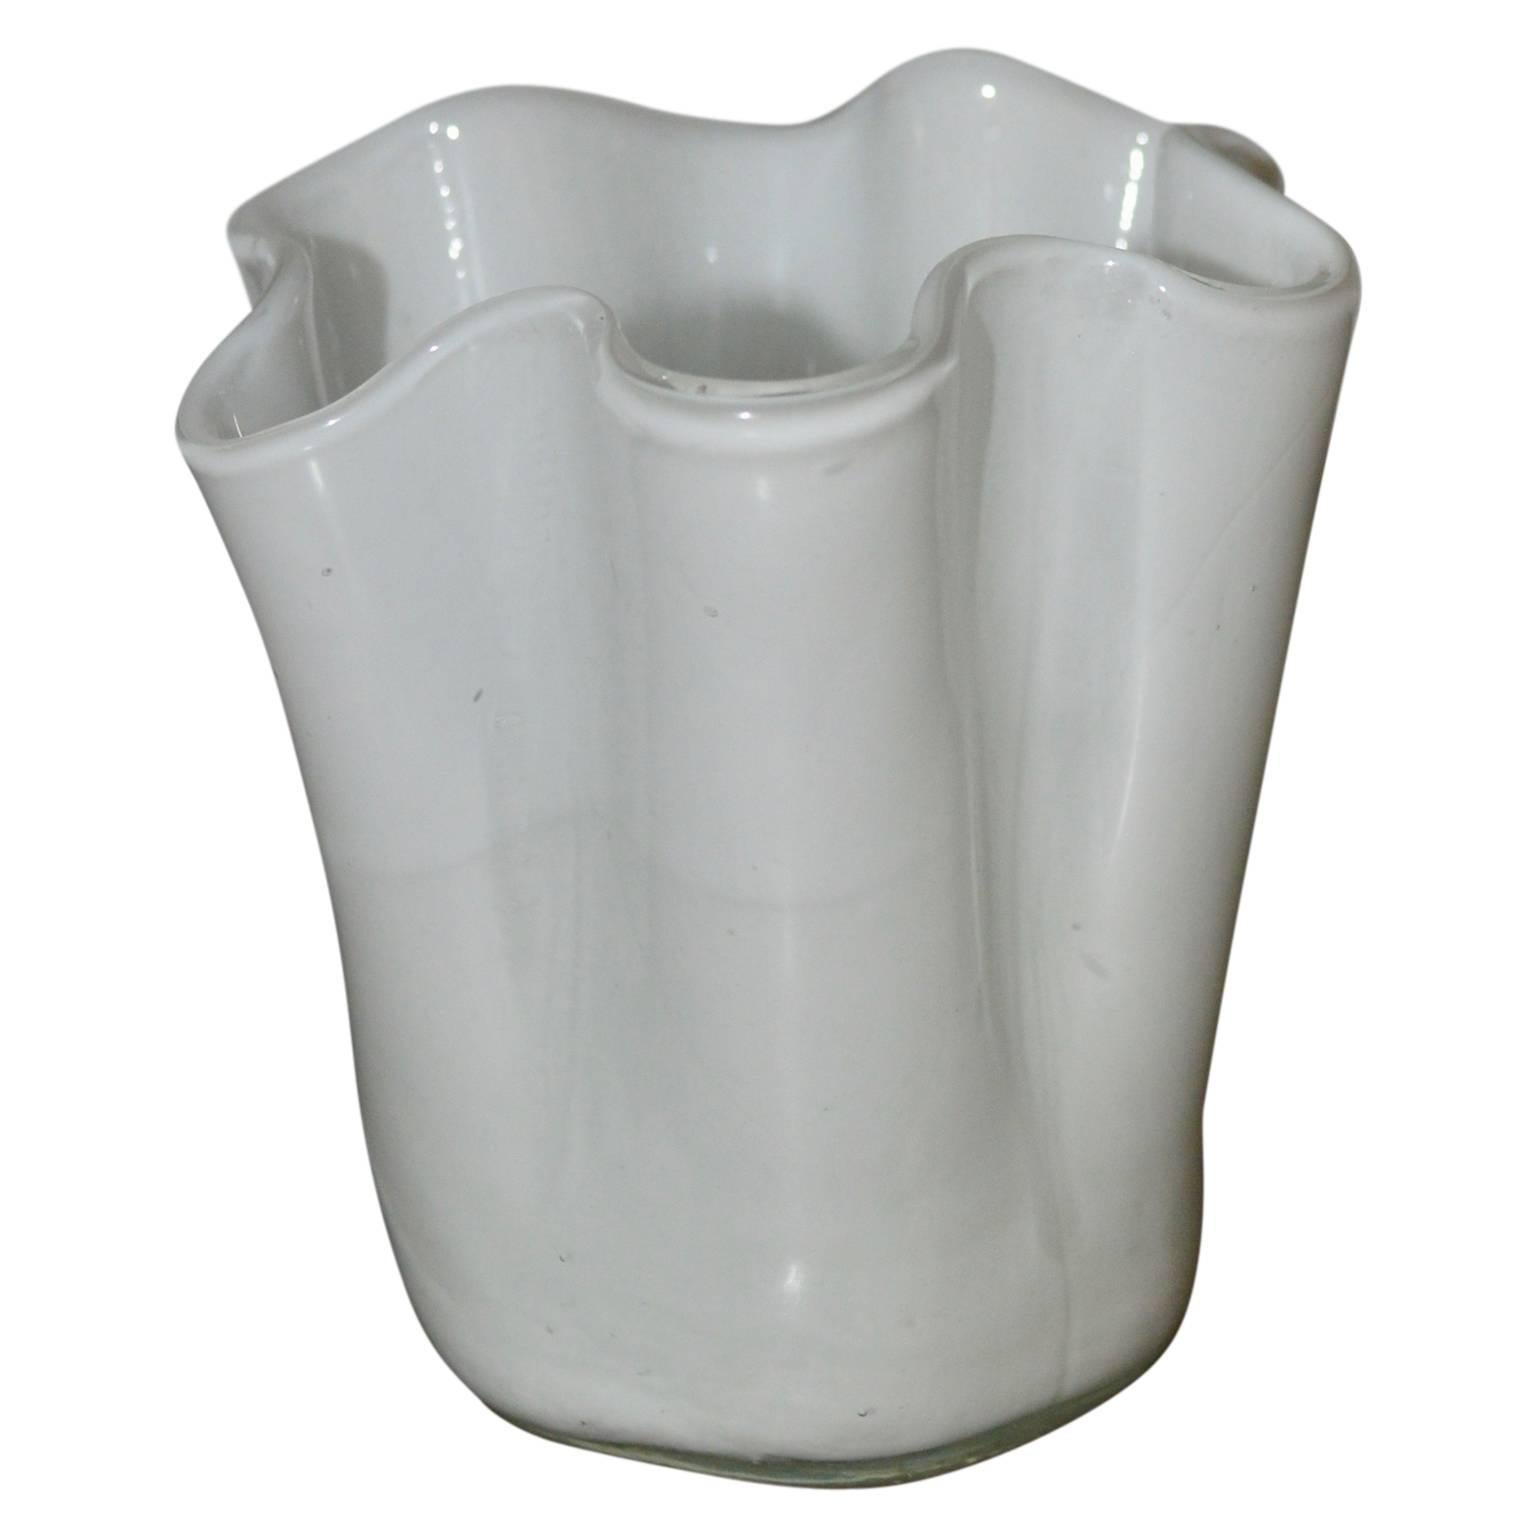 White opaque Murano handkerchief or Fazzoletto glass vase.